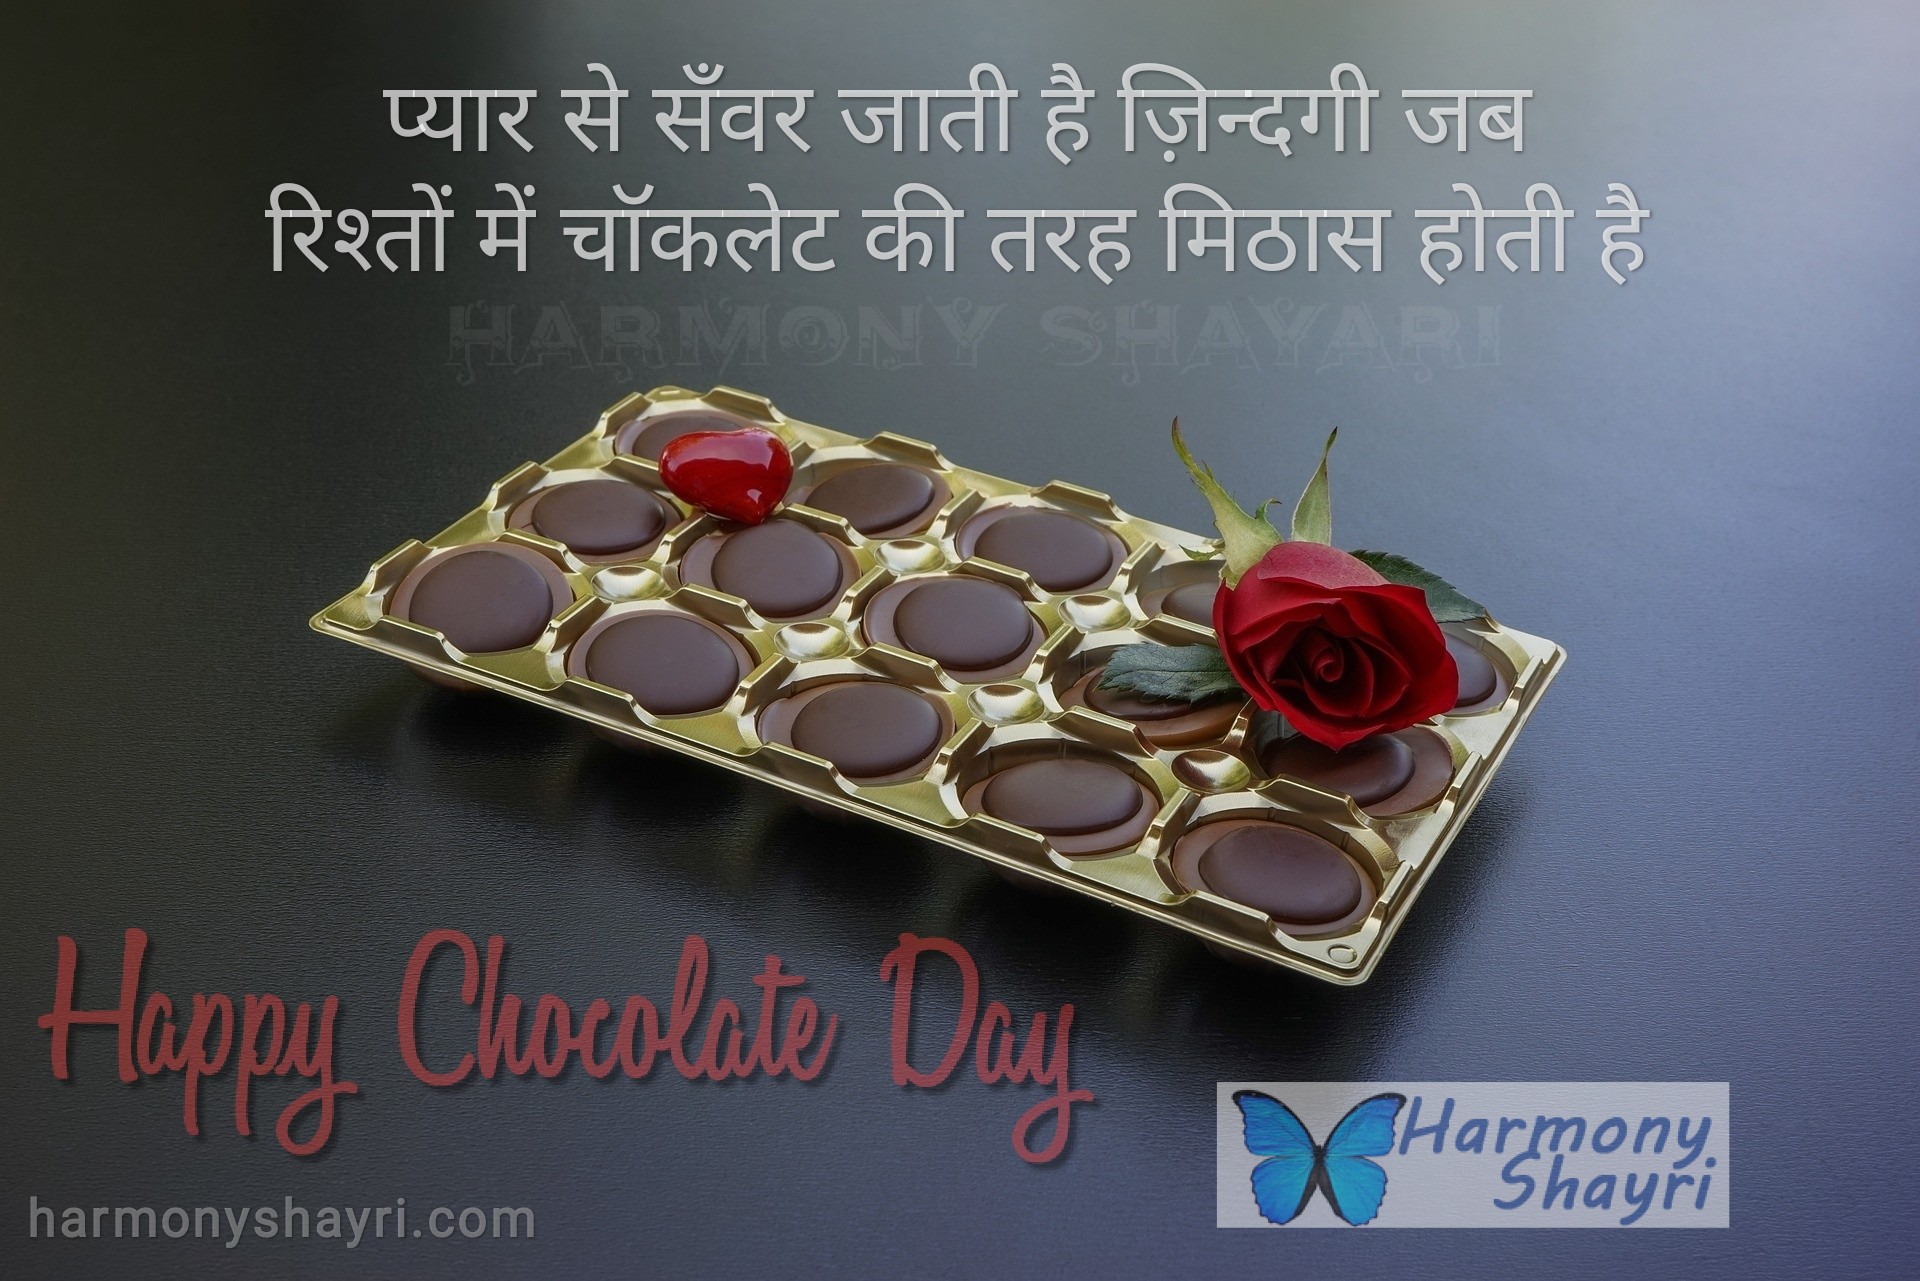 Pyar se sanwar jati hai – Happy Chocolate Day